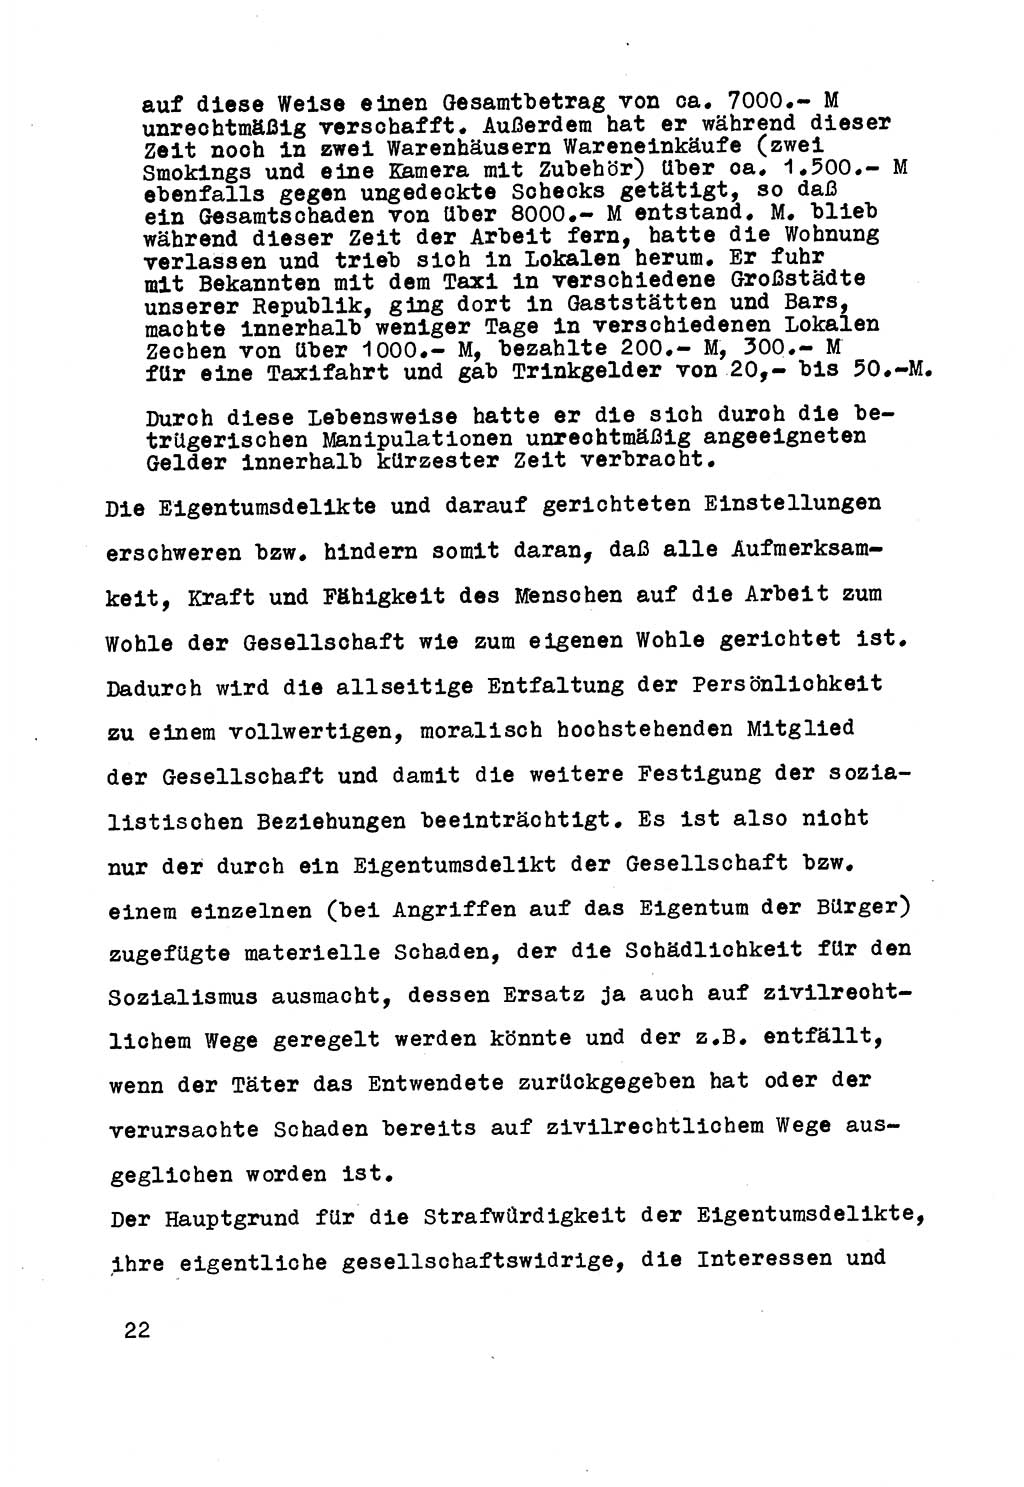 Strafrecht der DDR (Deutsche Demokratische Republik), Besonderer Teil, Lehrmaterial, Heft 5 1970, Seite 22 (Strafr. DDR BT Lehrmat. H. 5 1970, S. 22)